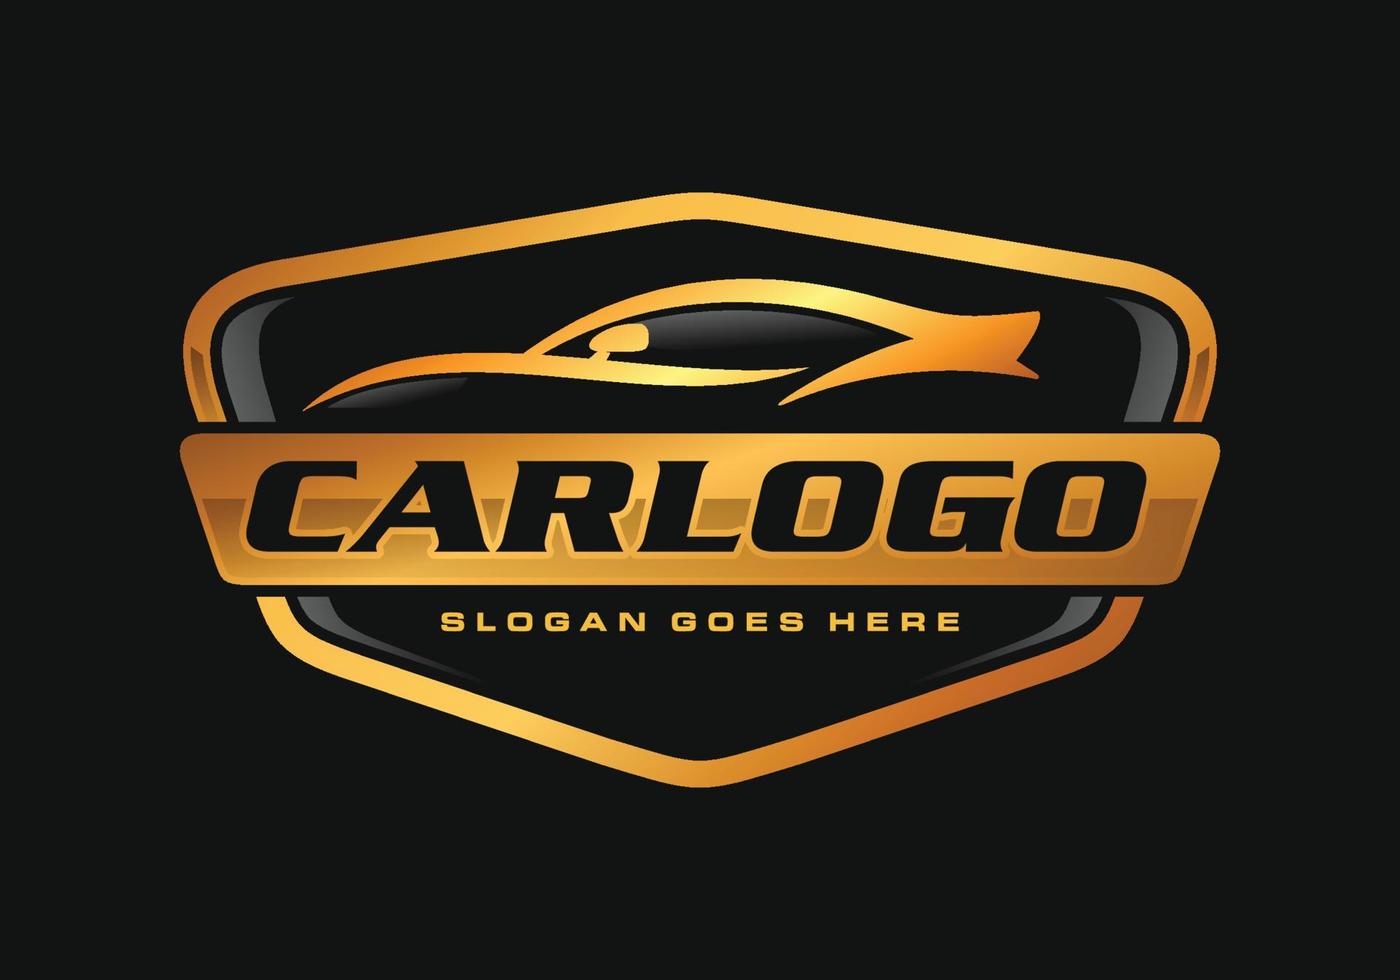 coche automotor logo diseño vector